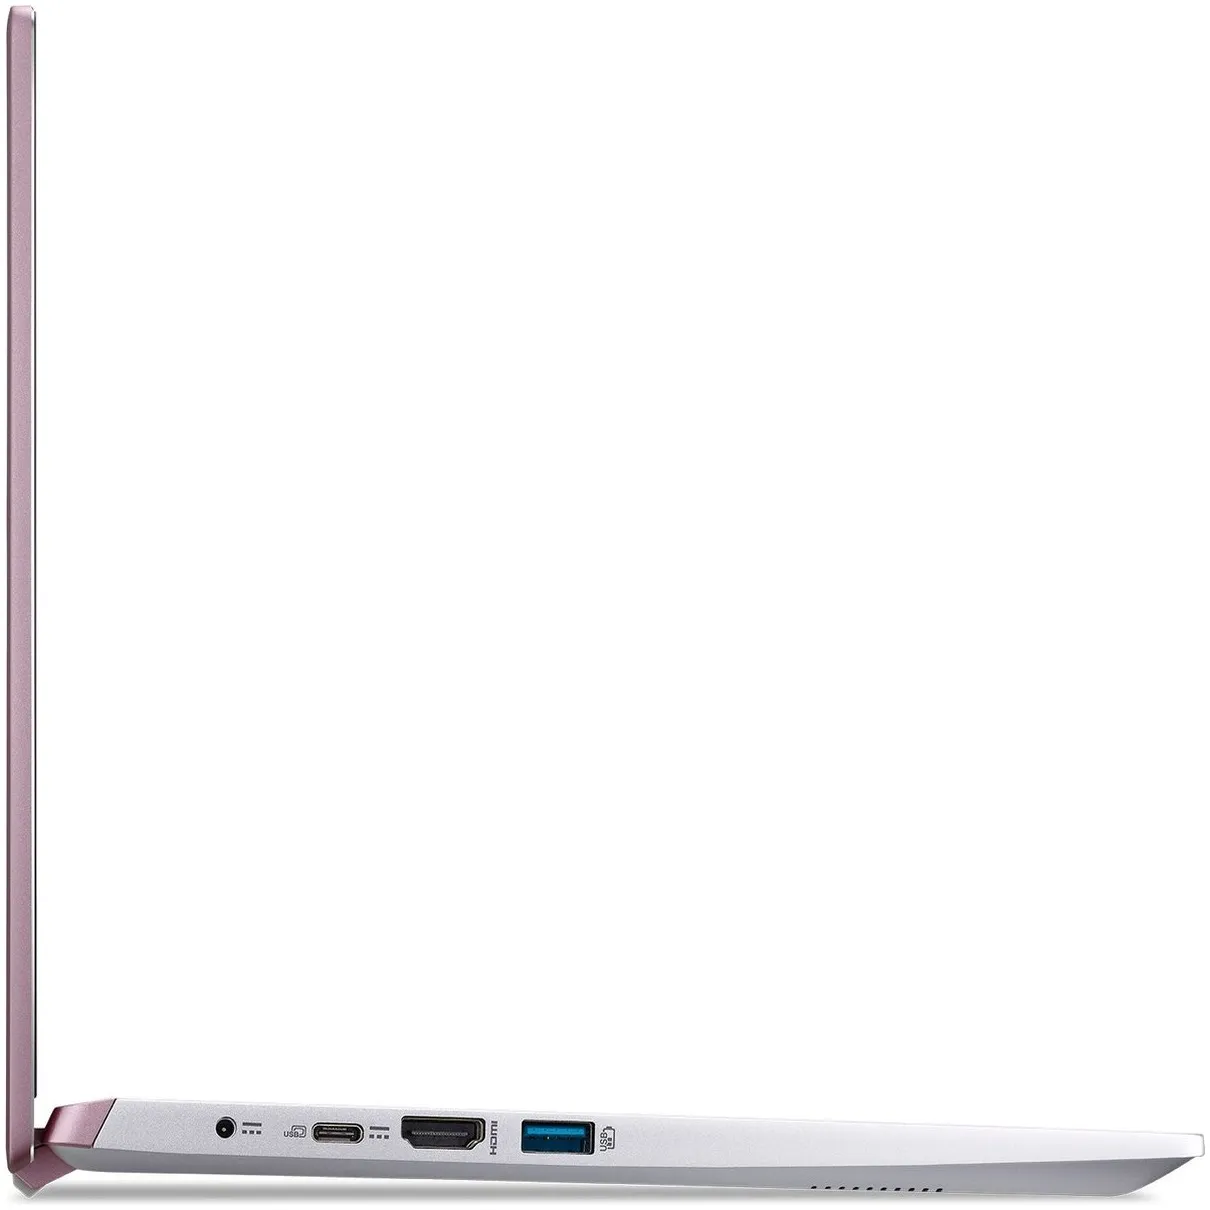 Acer Swift X SFX14-41G-R7D2 Roze